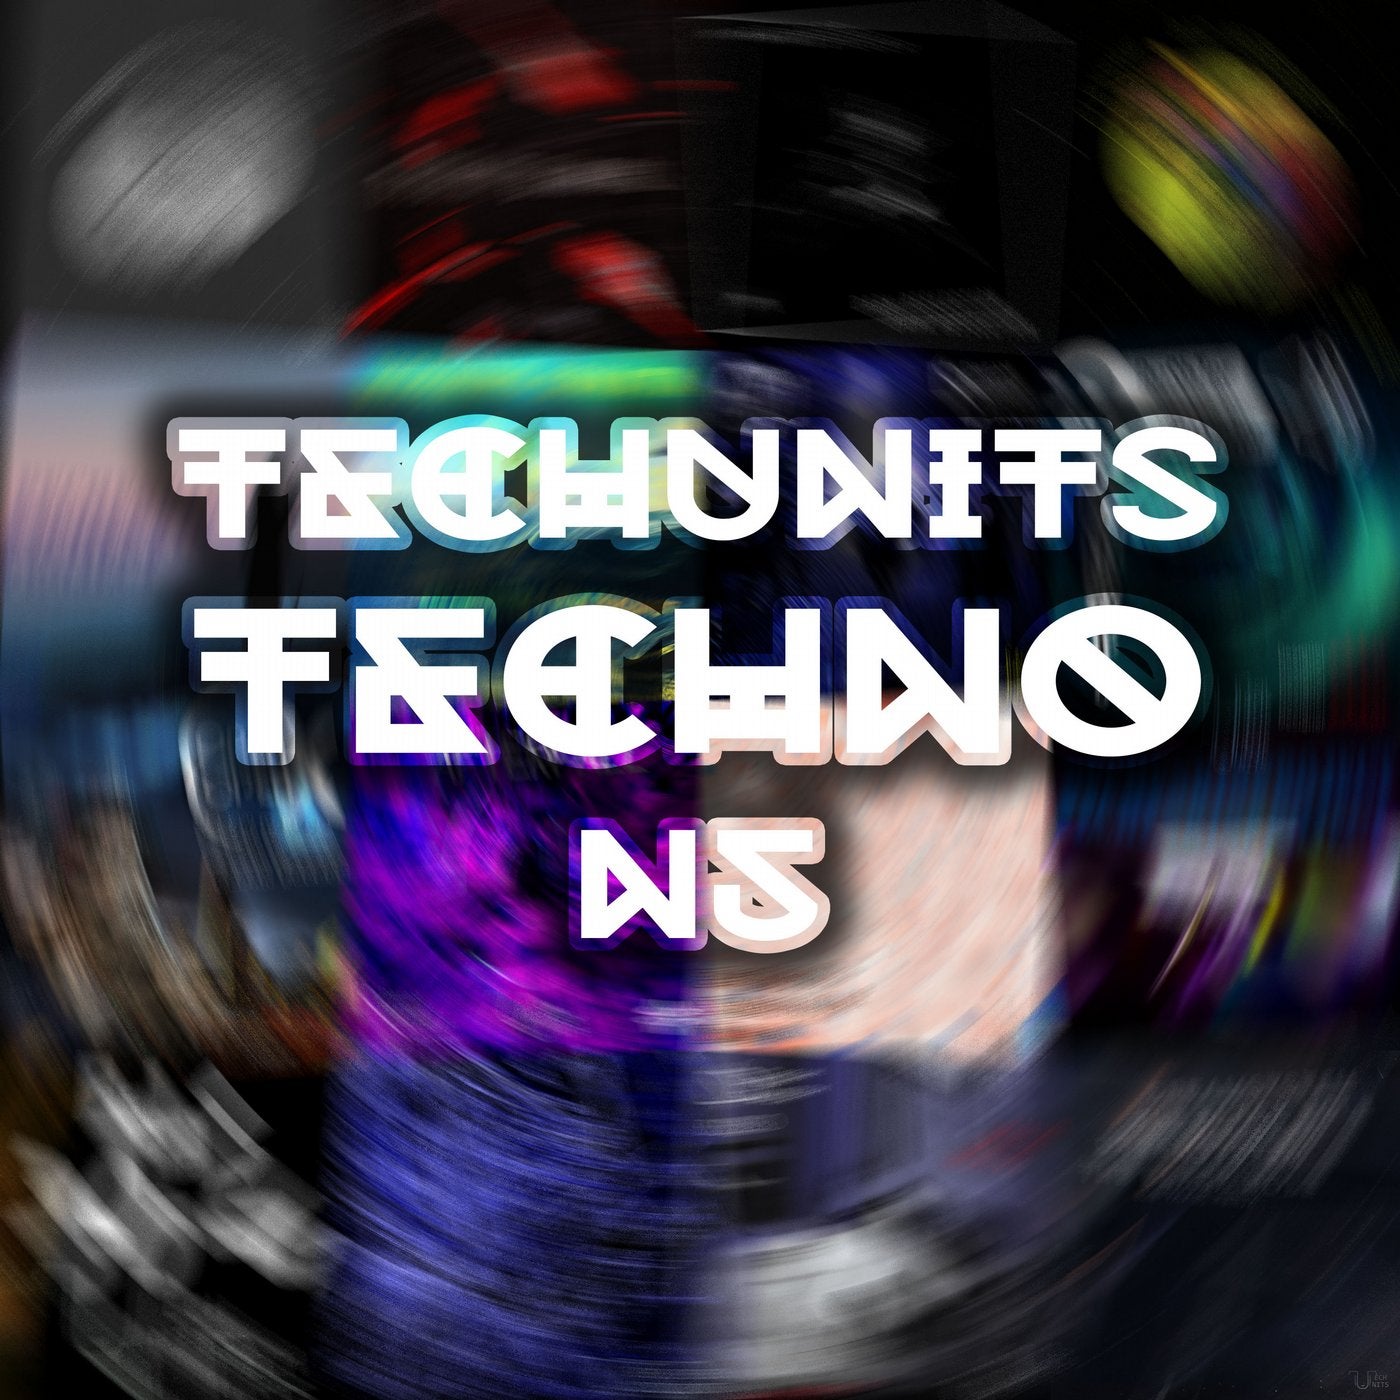 Techno 5